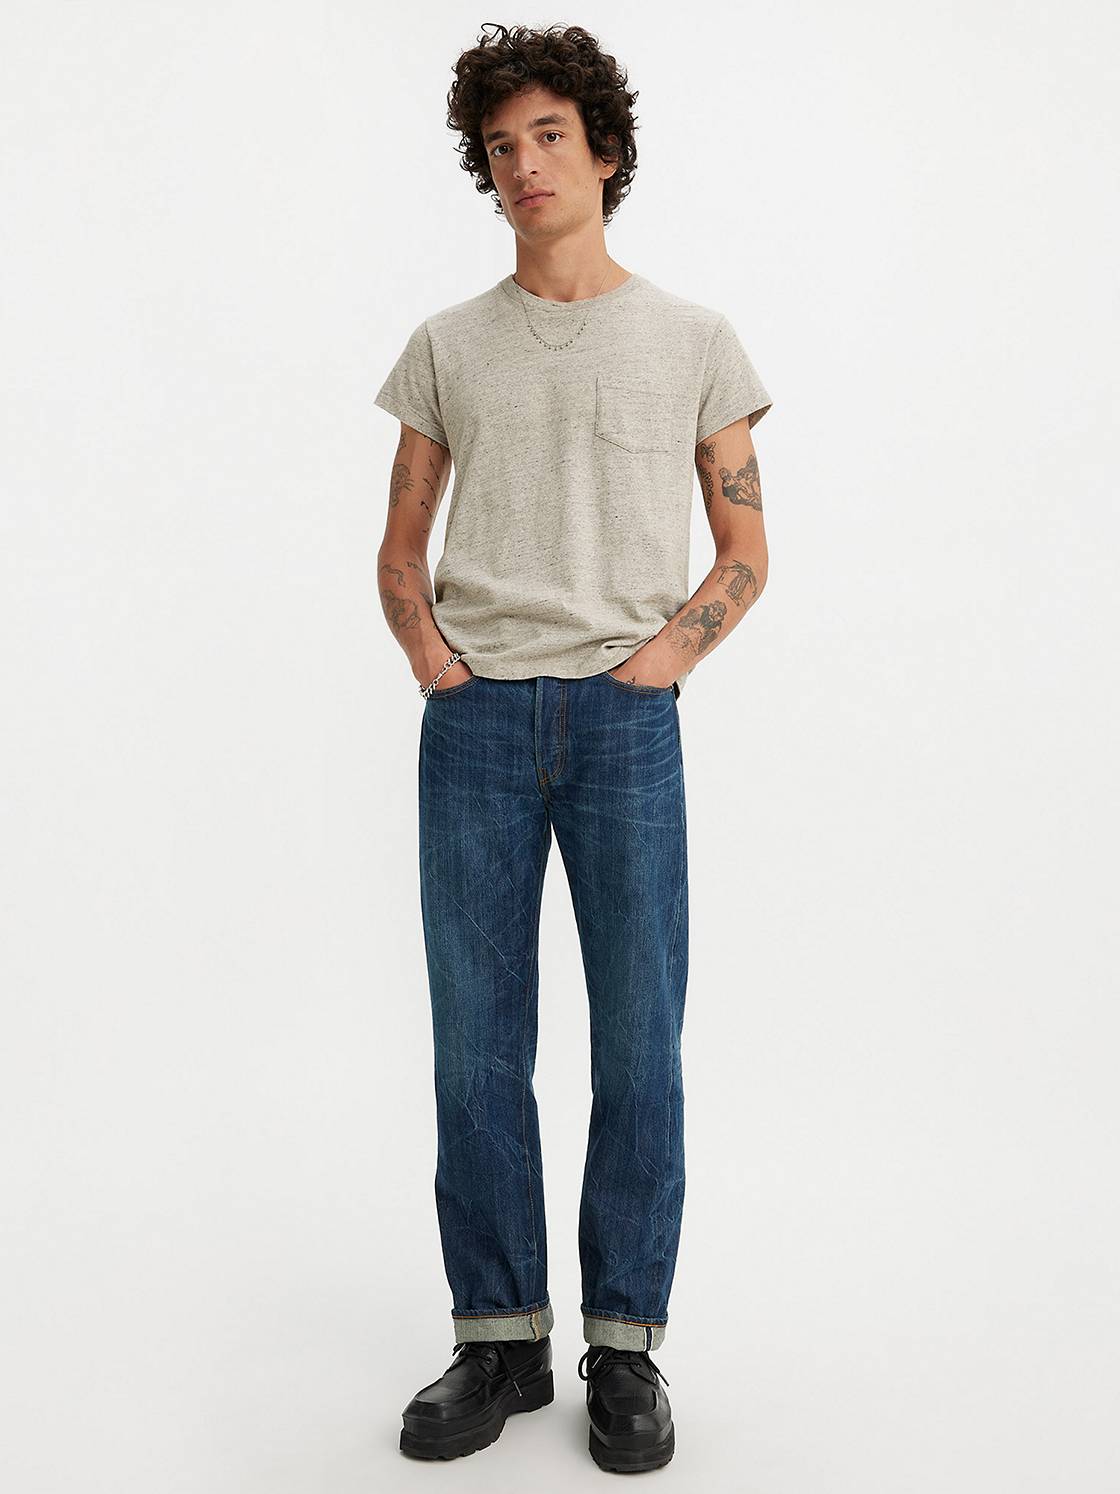 Levi's® Vintage Clothing 1947 501® Jeans 1